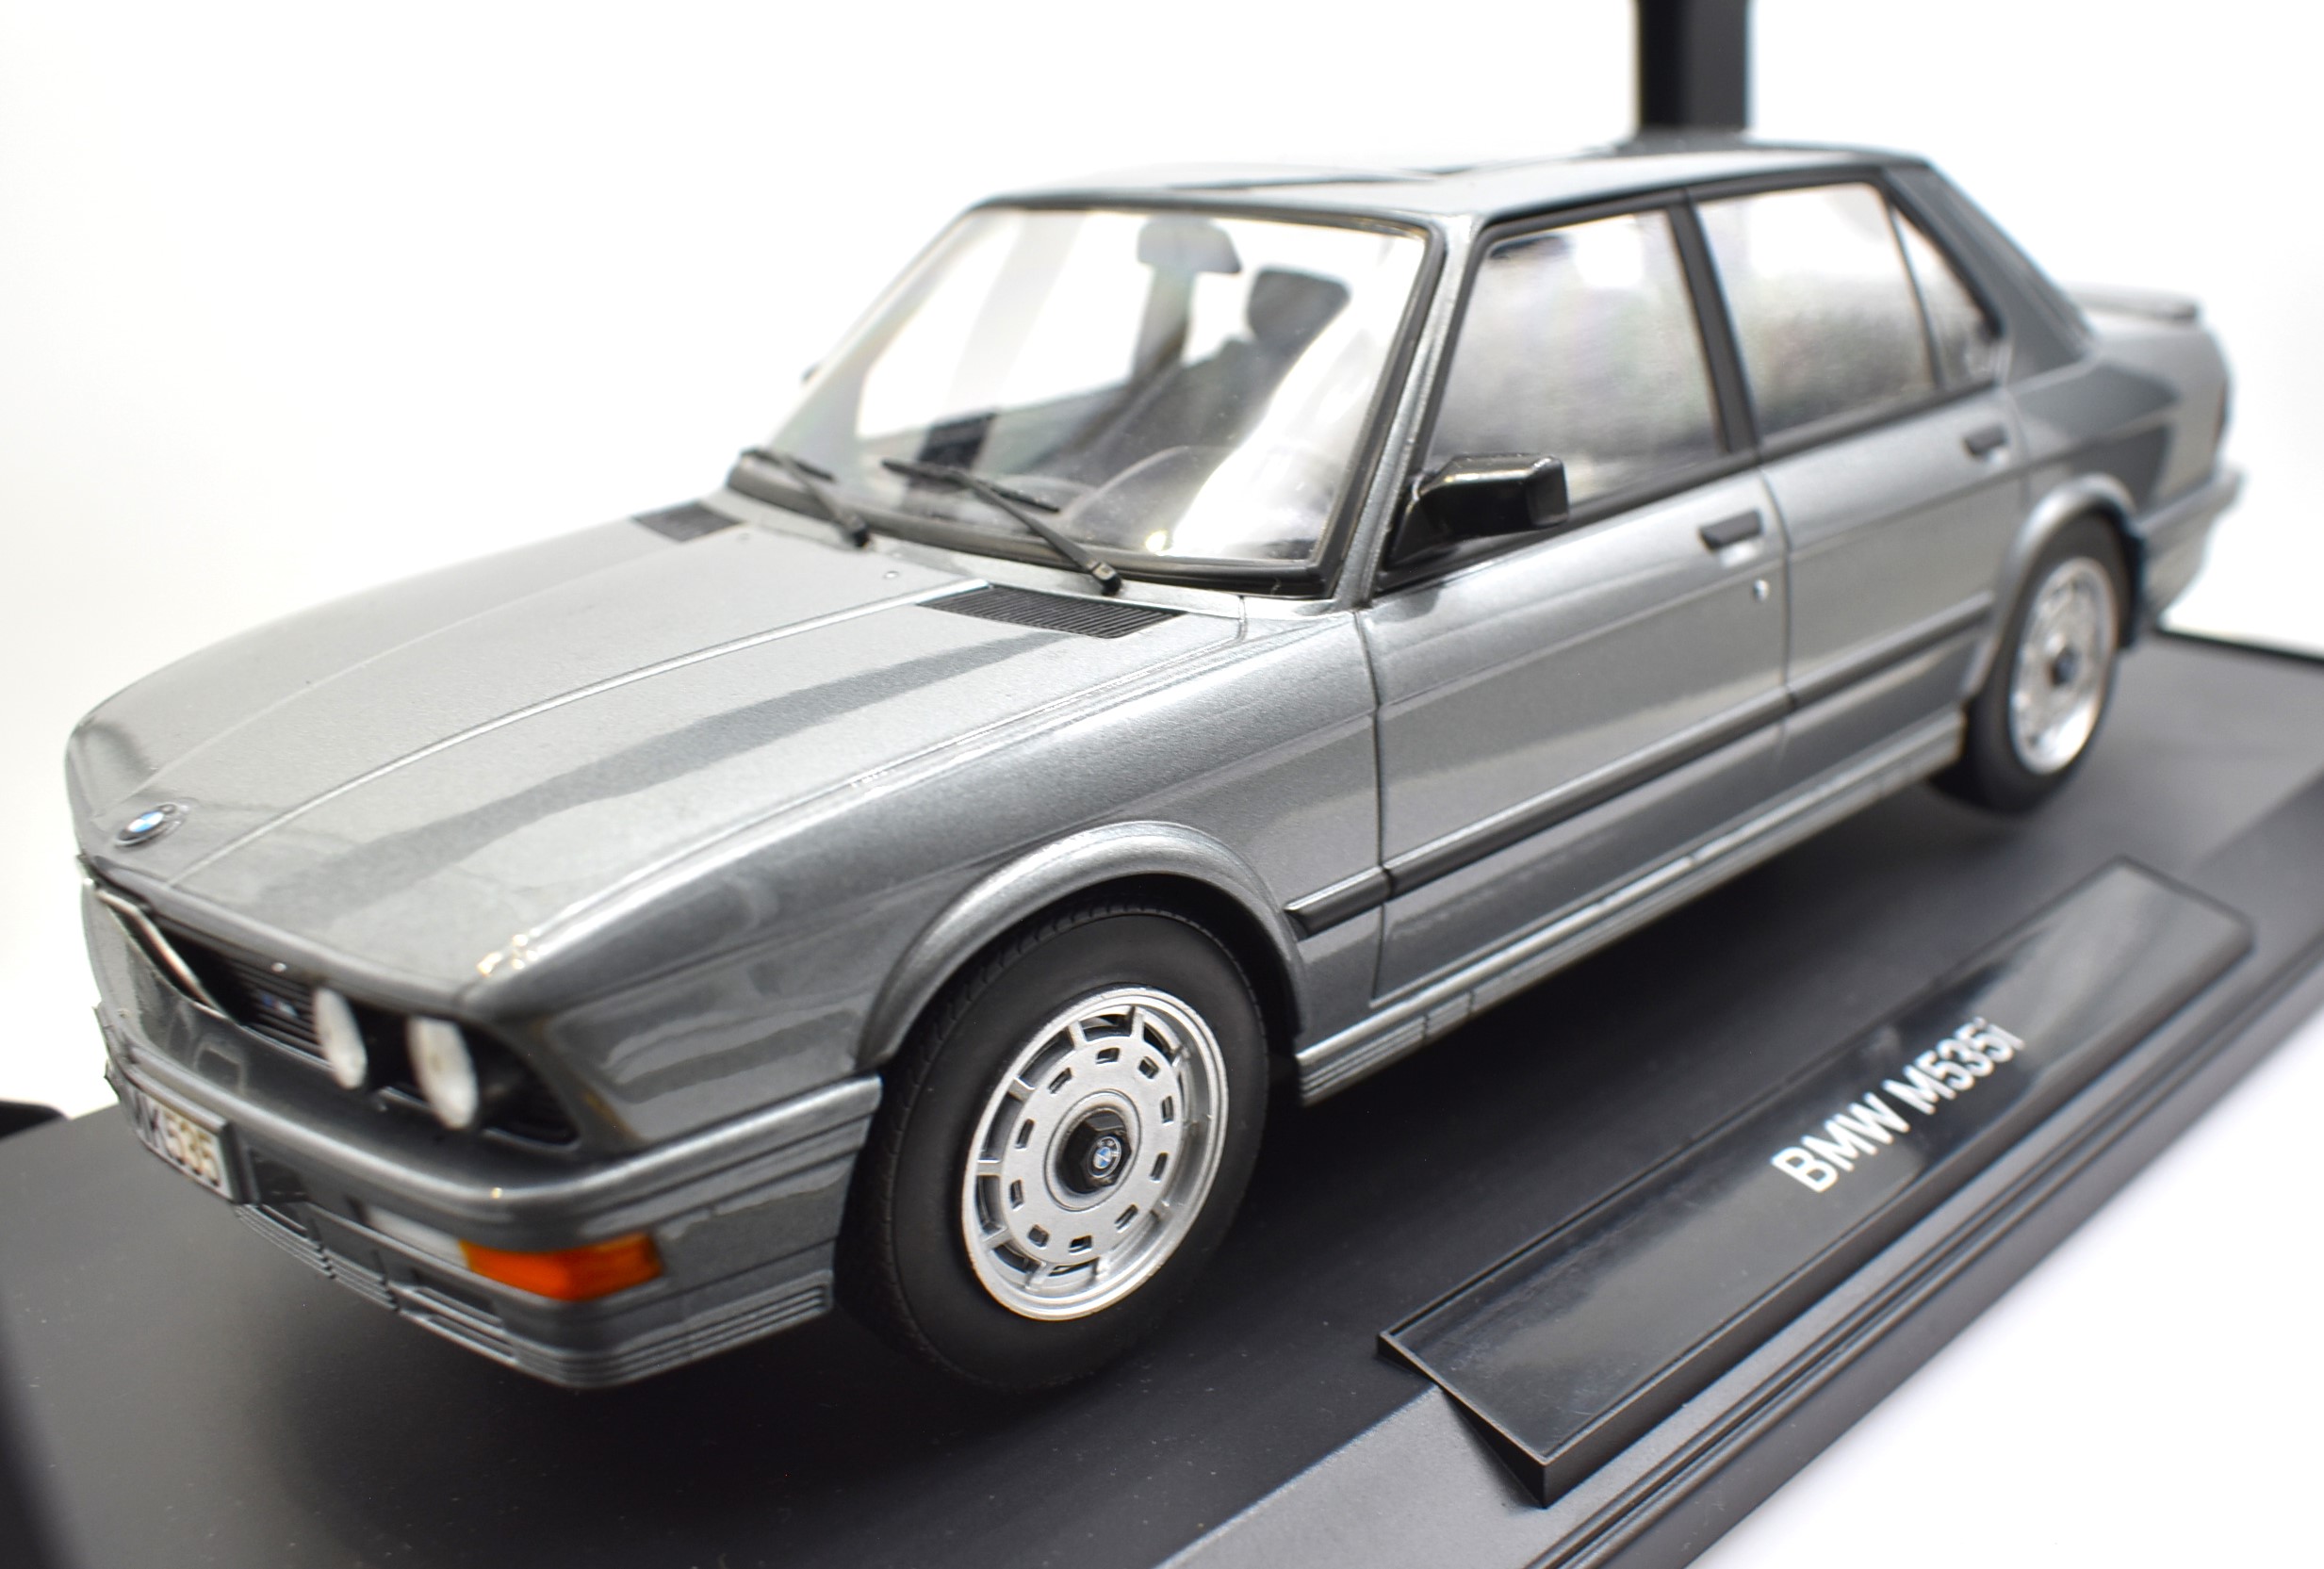 Modellino auto scala 1:18 BMW M535i Norev diecast modellismo statico collezione